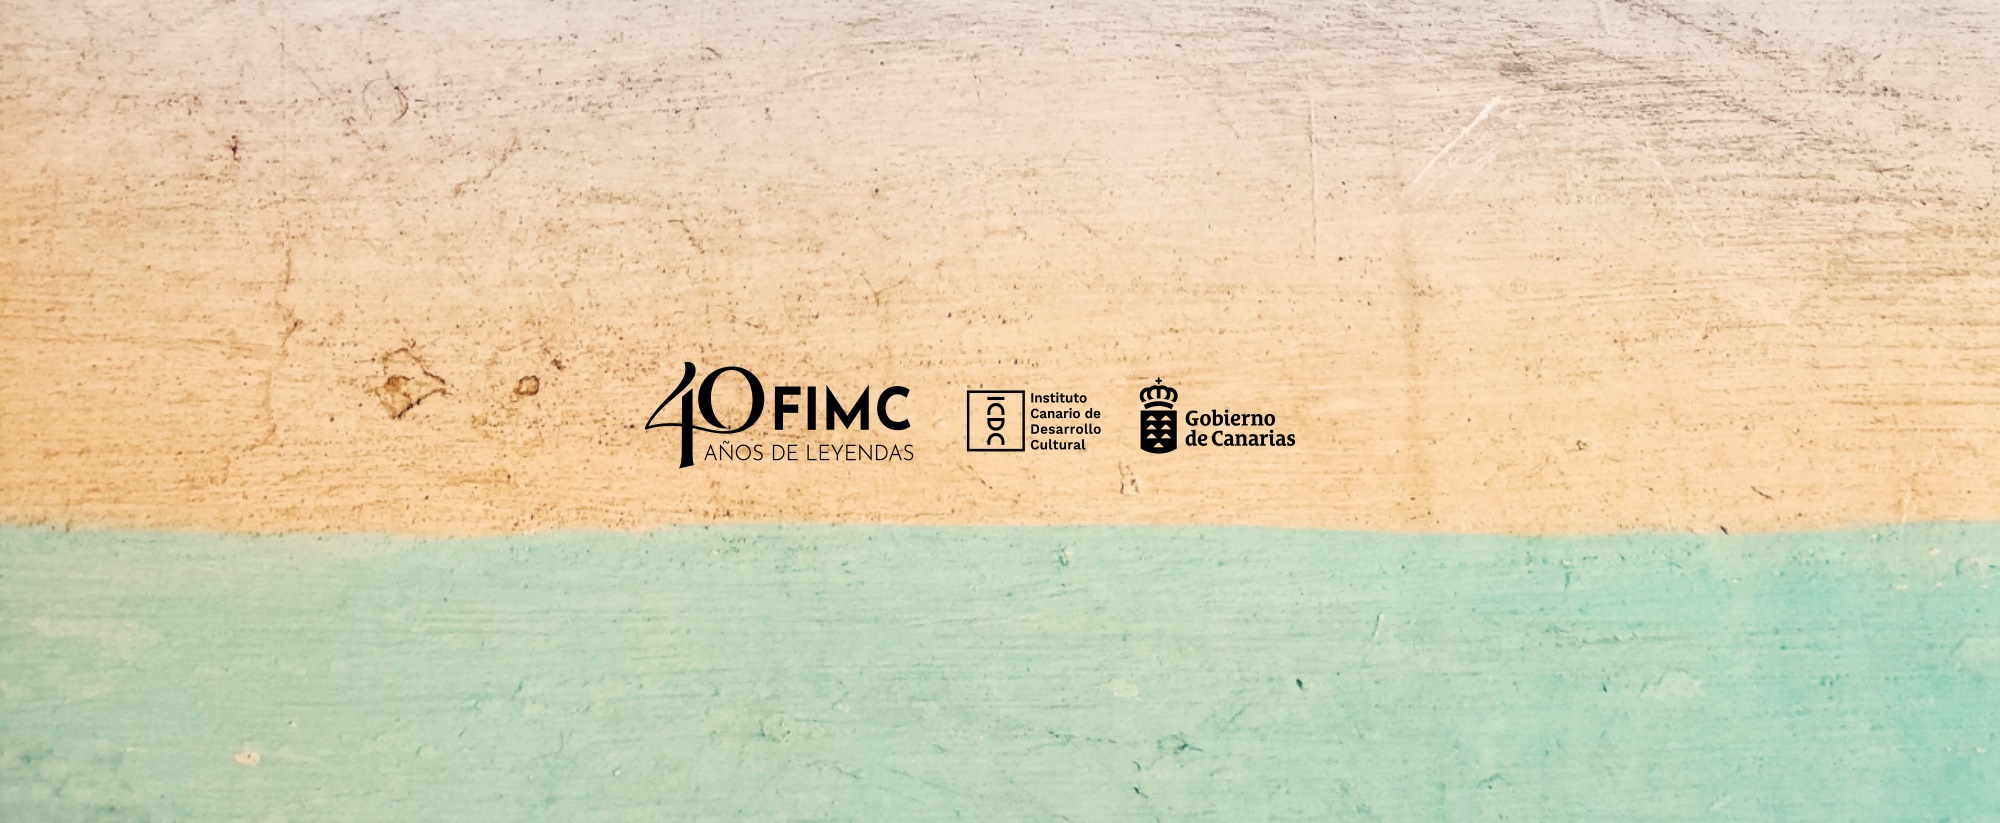 Festival Internacional de Música de Canarias (FIMC)